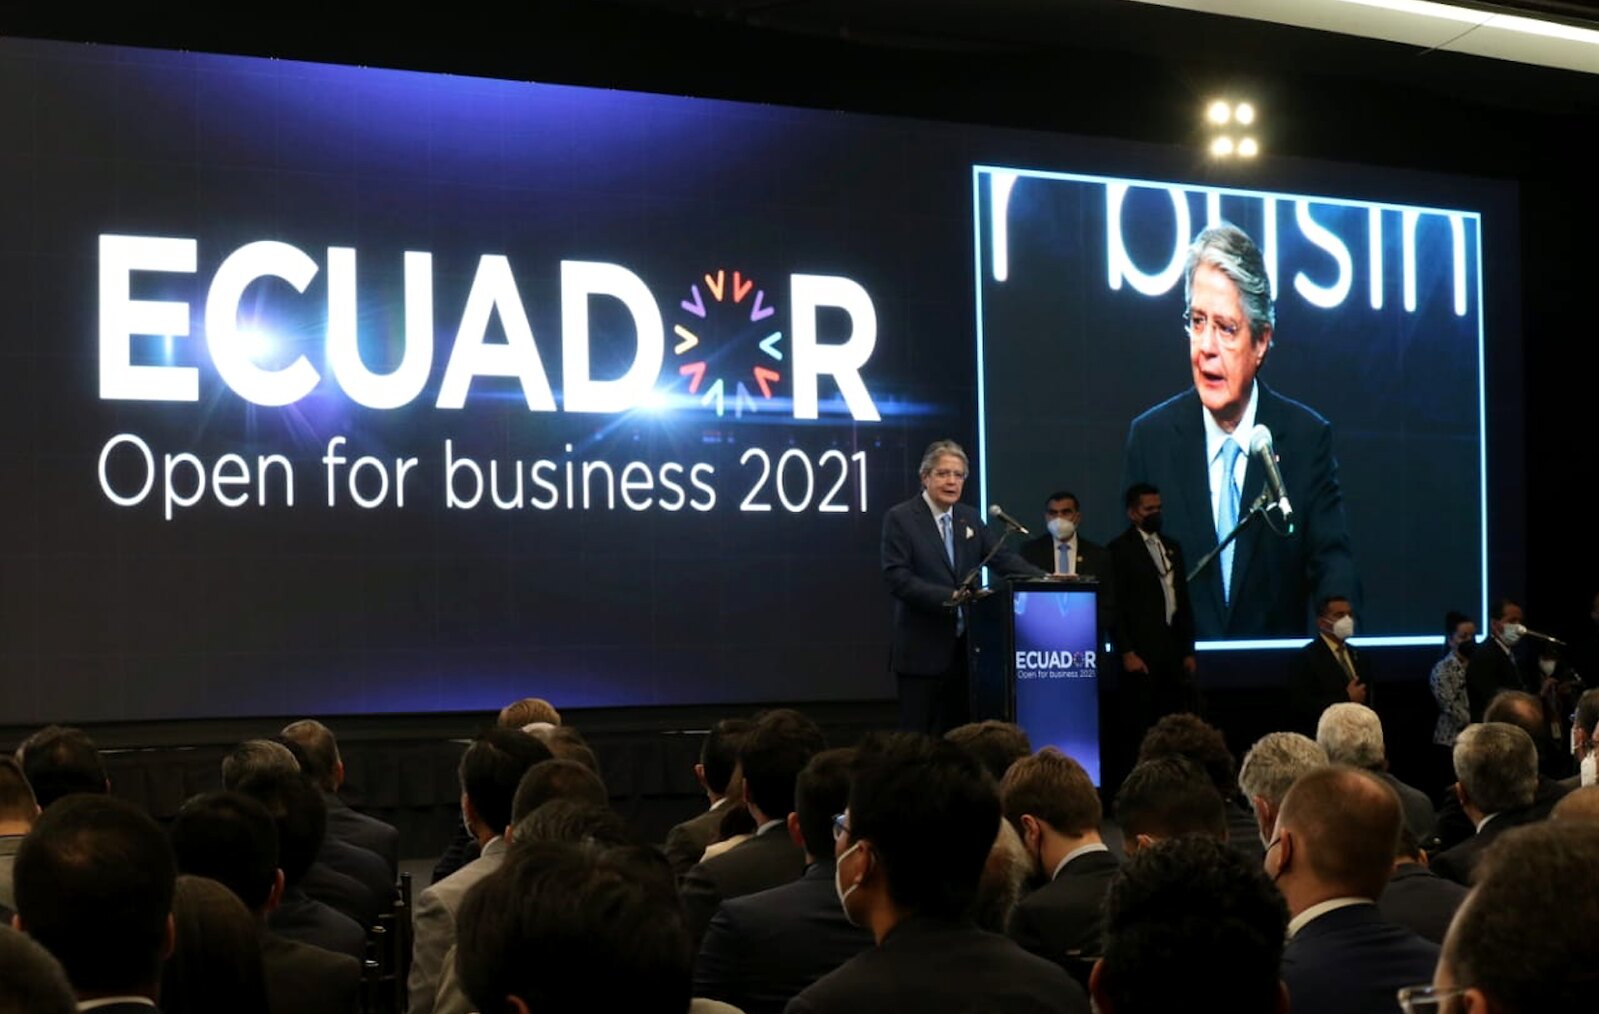 Ecuador Open for Business